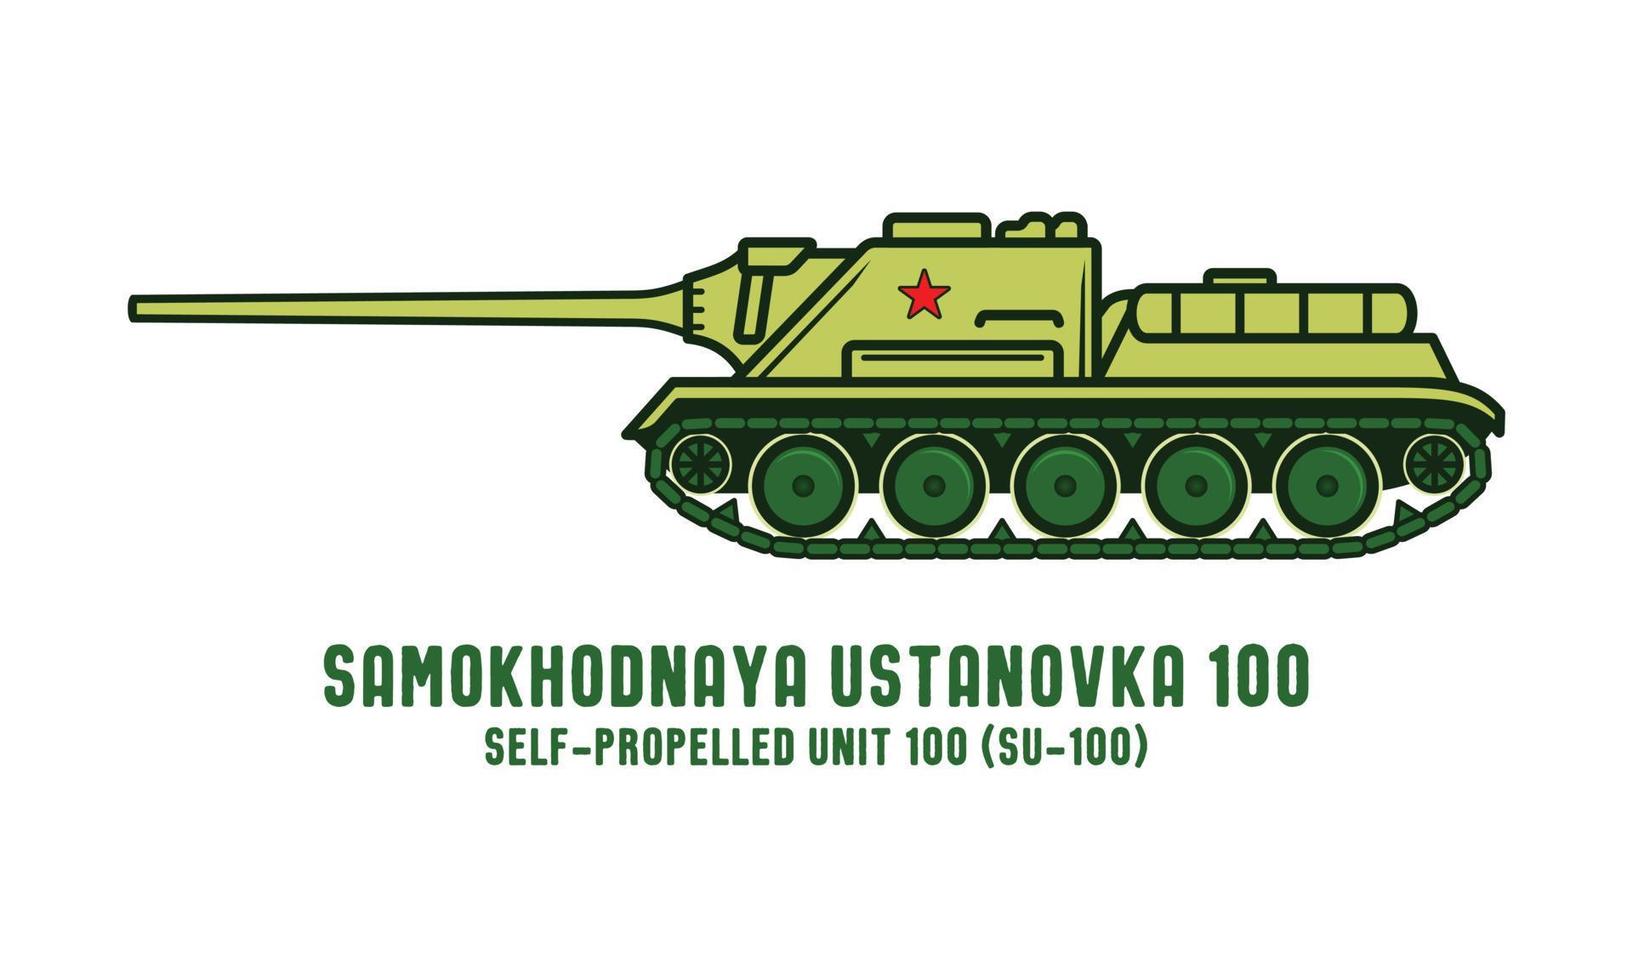 wereld oorlog 2 samokhodnaya ustanovka 100 leger Russisch tank vector